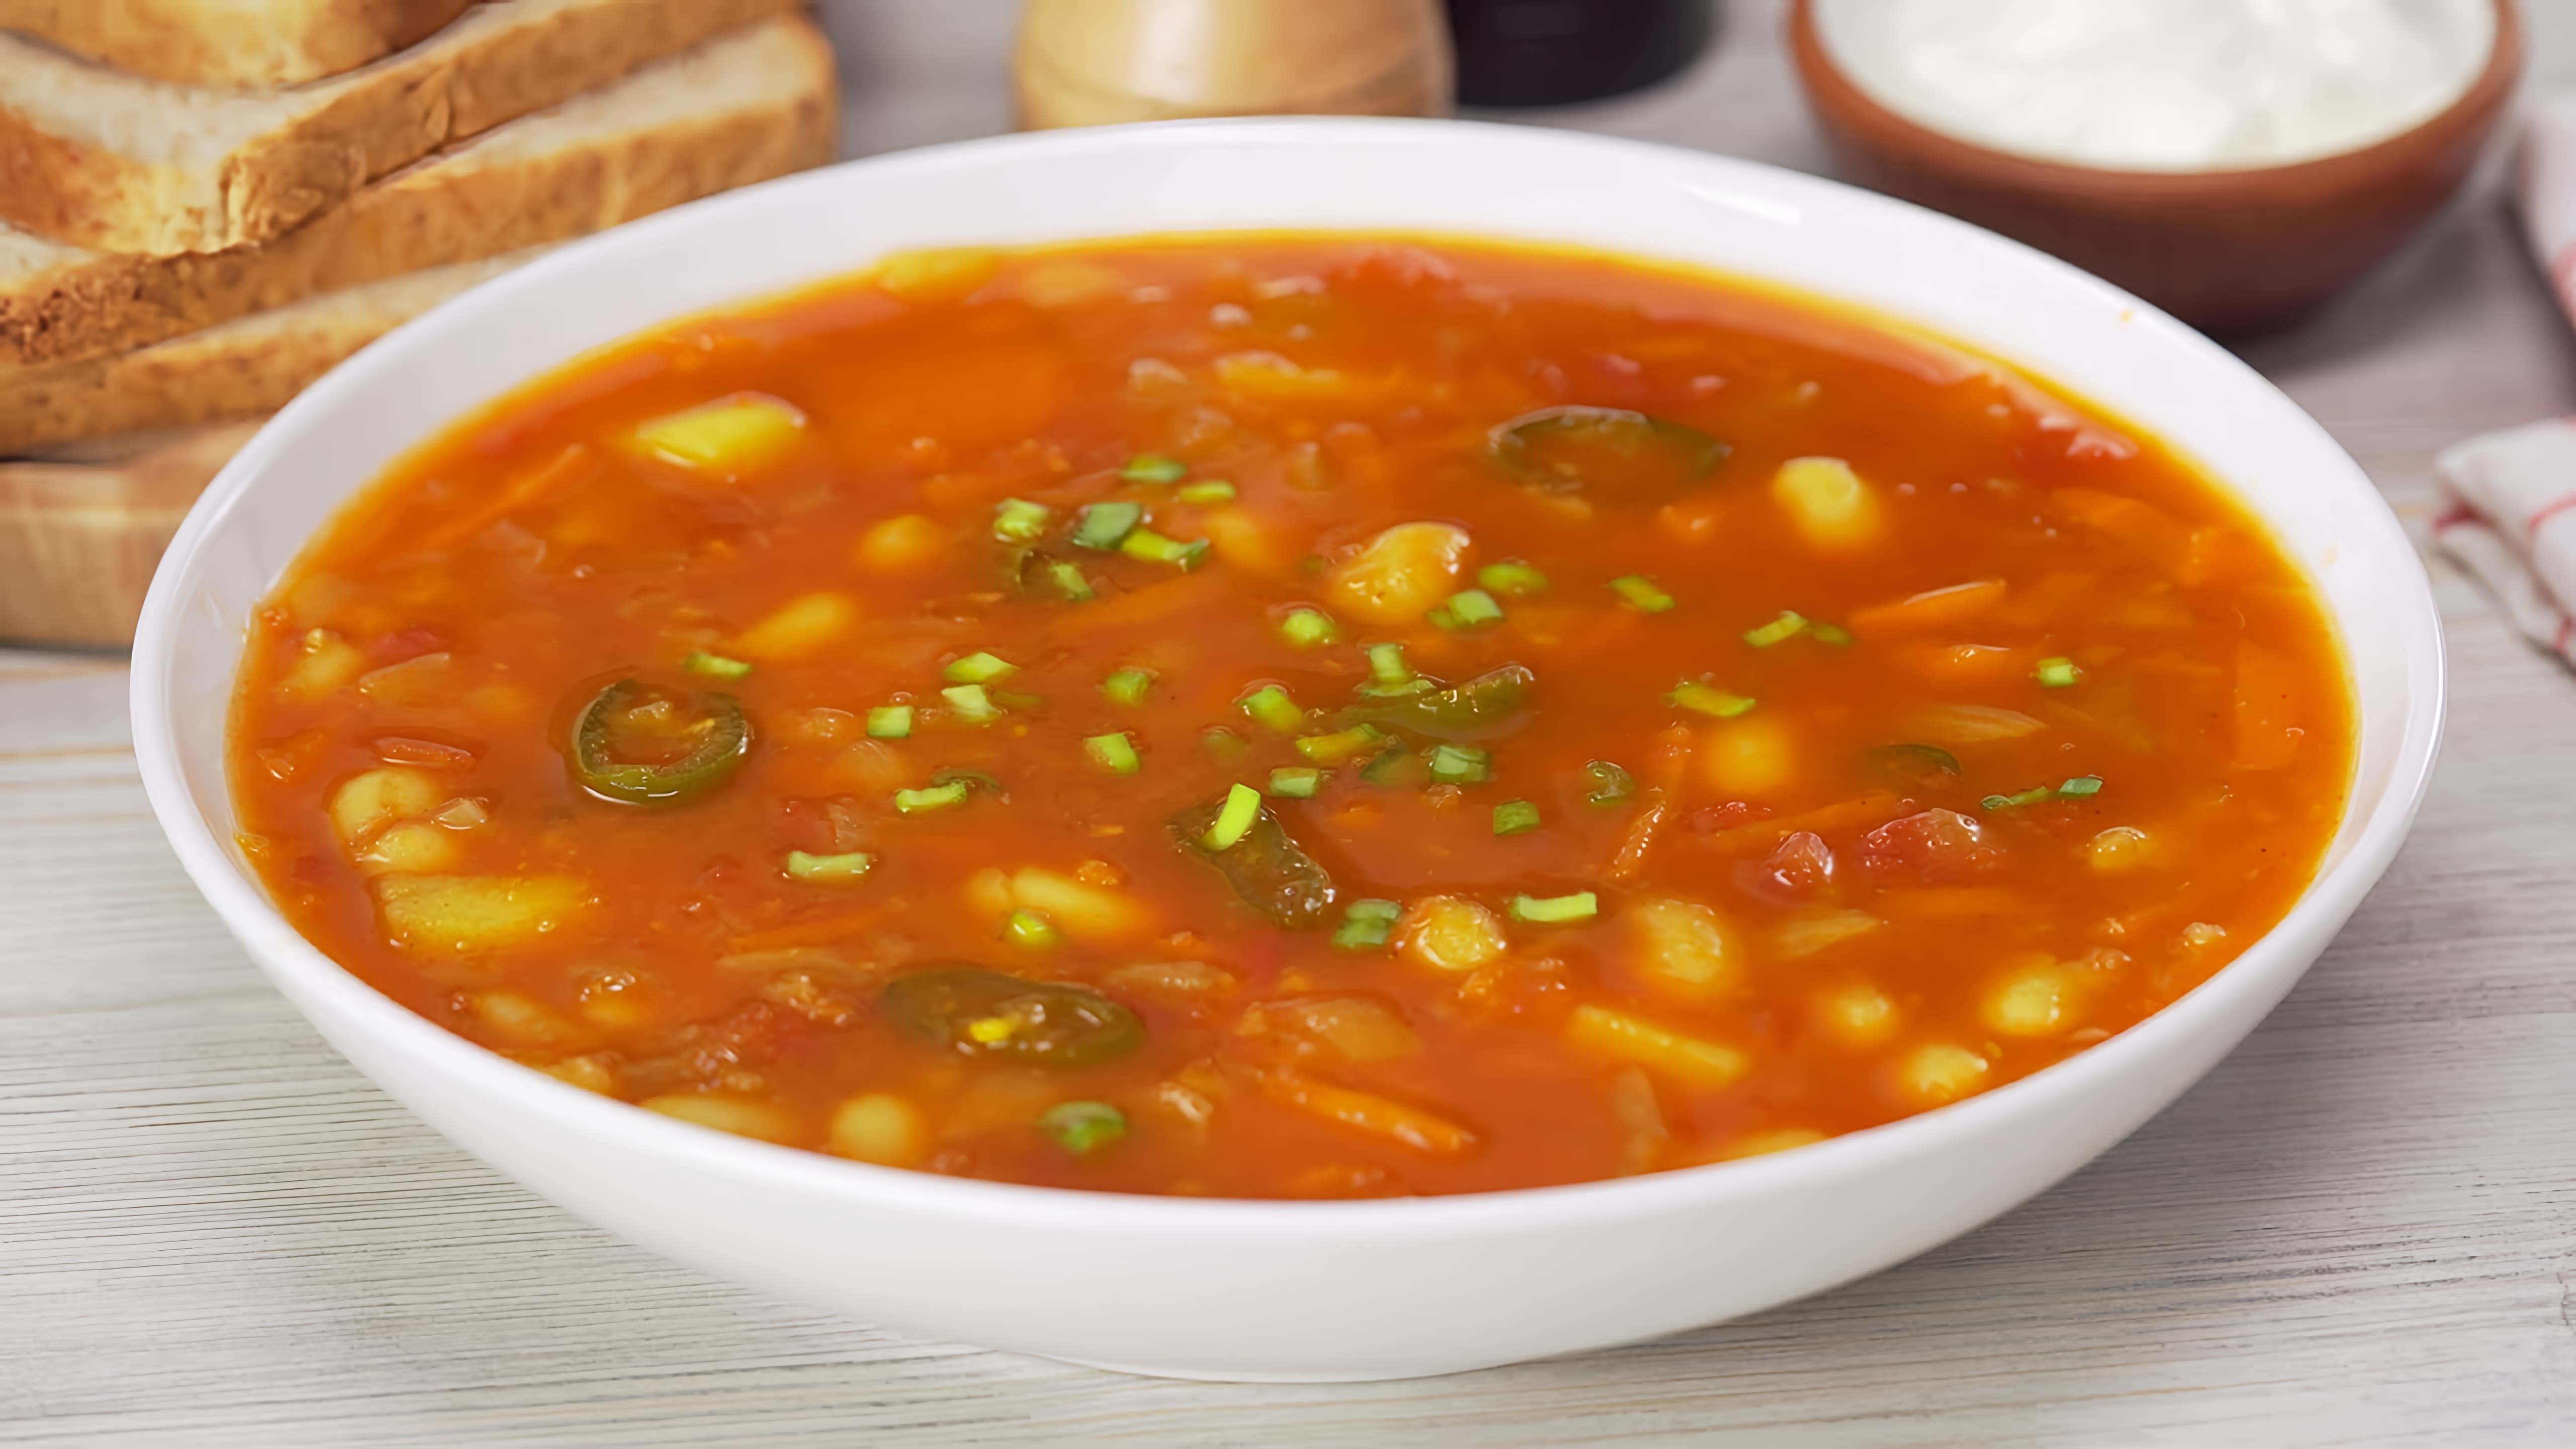 В данном видео демонстрируется рецепт приготовления аппетитного и ароматного средиземноморского фасолевого супа